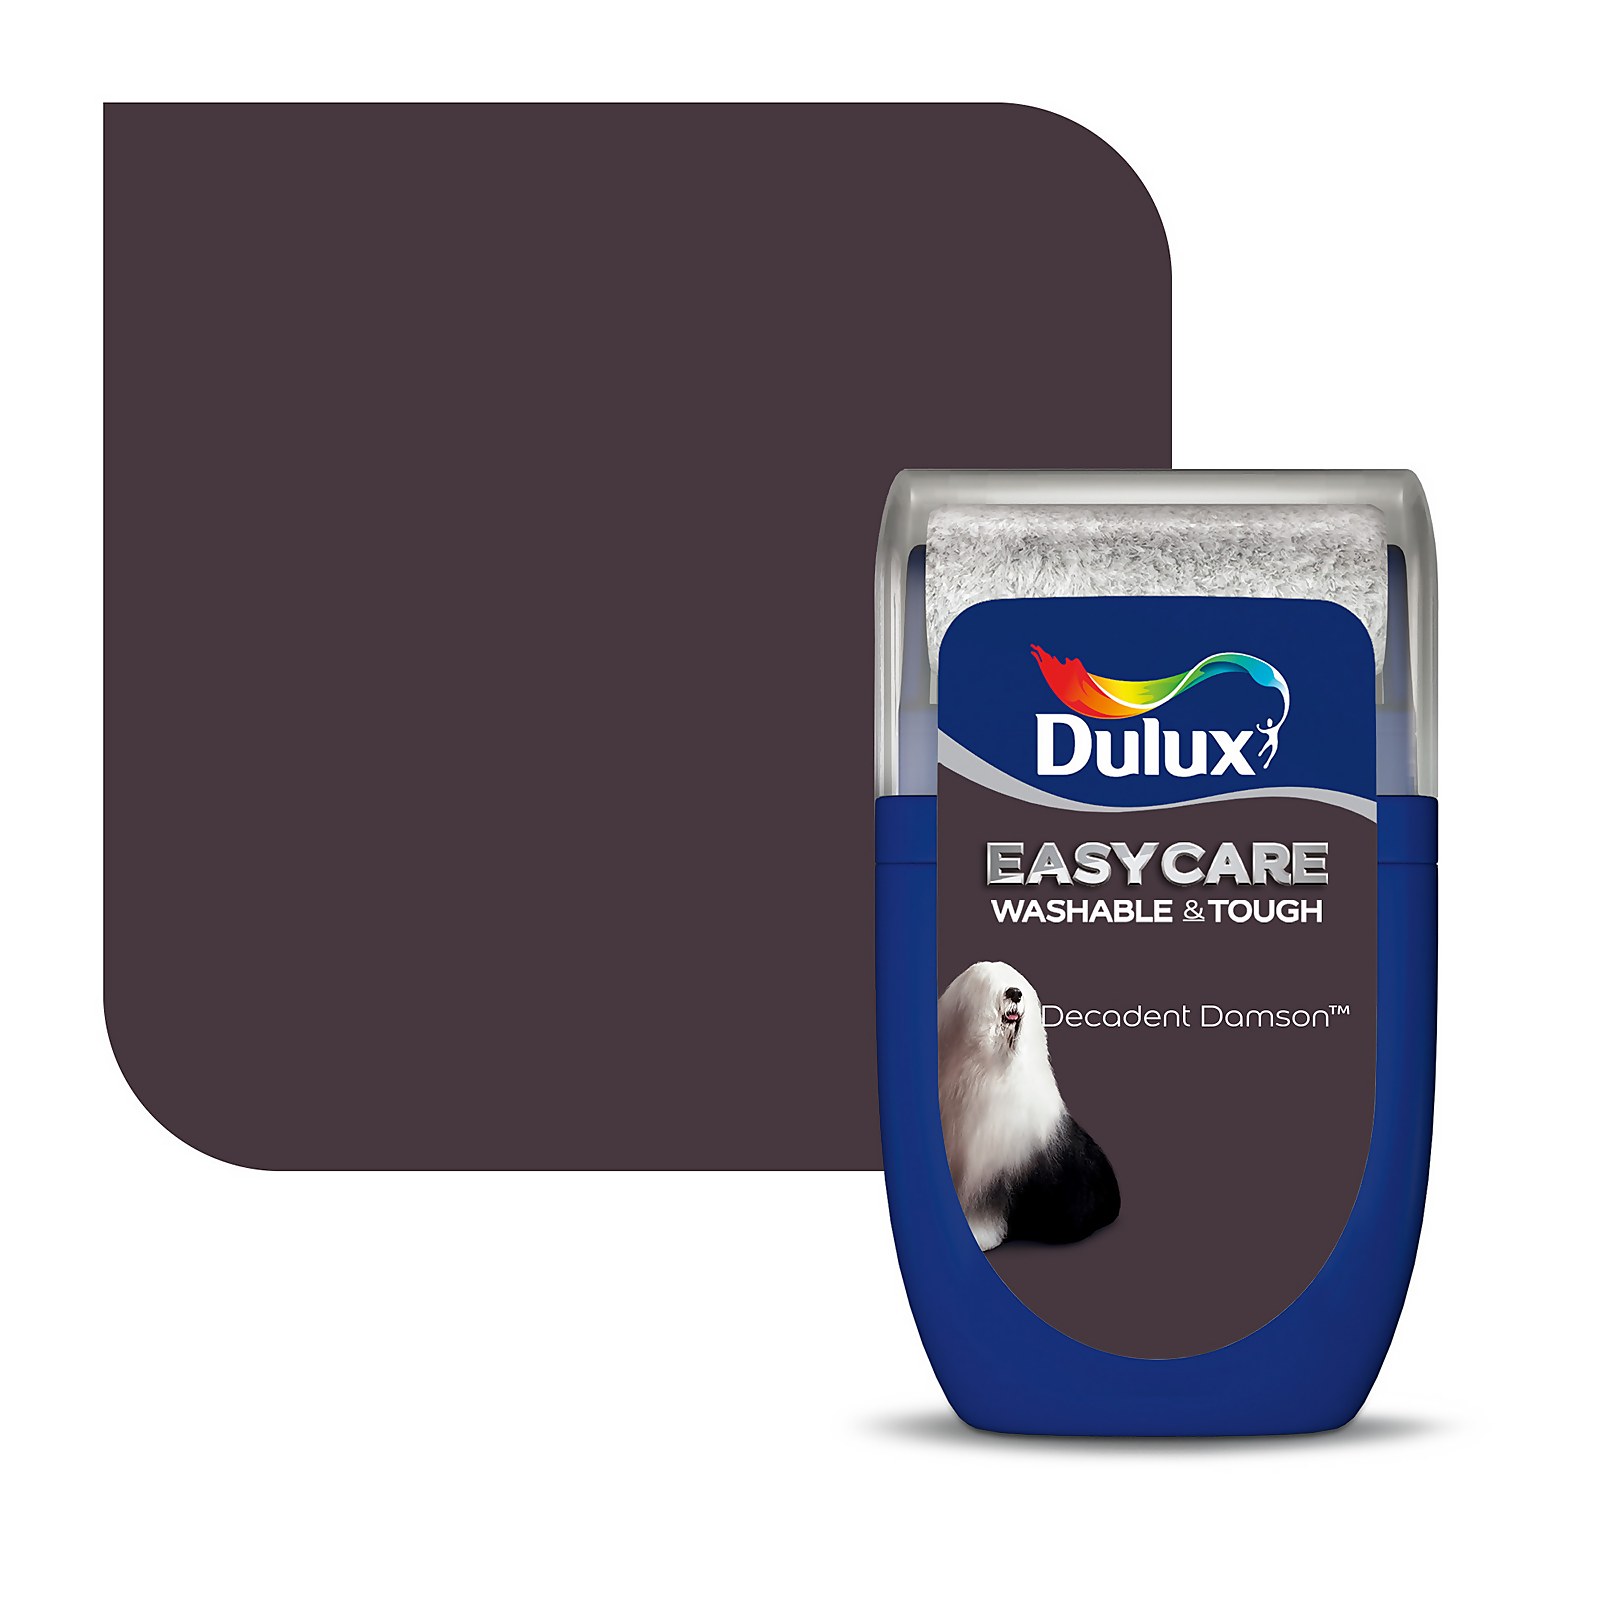 Dulux Easycare Washable & Tough Paint Decadent Damson - Tester 30ml